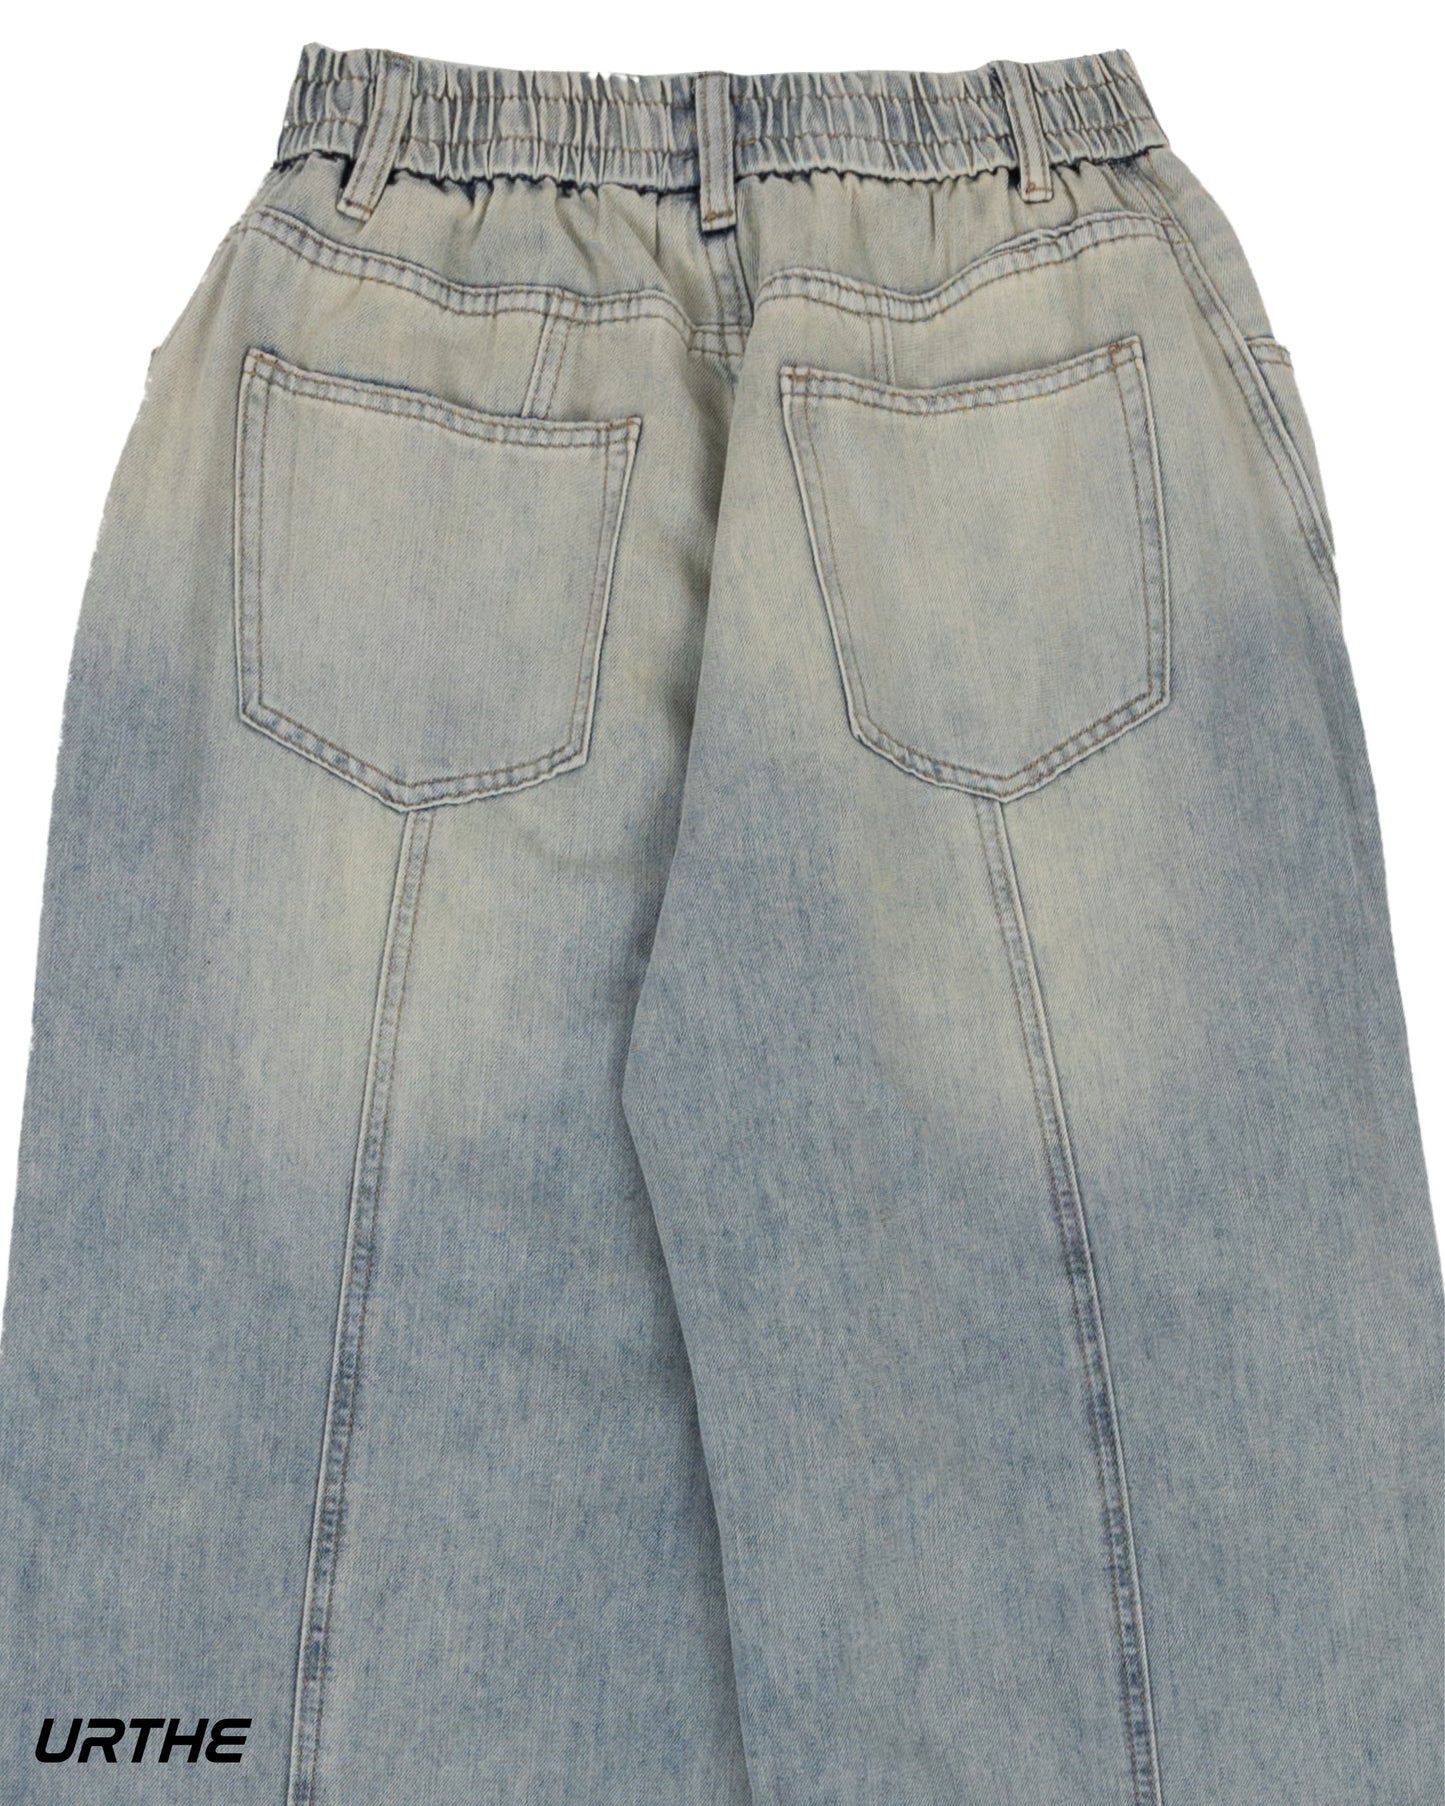 URTHE - กางเกงยีนส์ ขายาว สีฟอก รุ่น TT BLUE JEANS